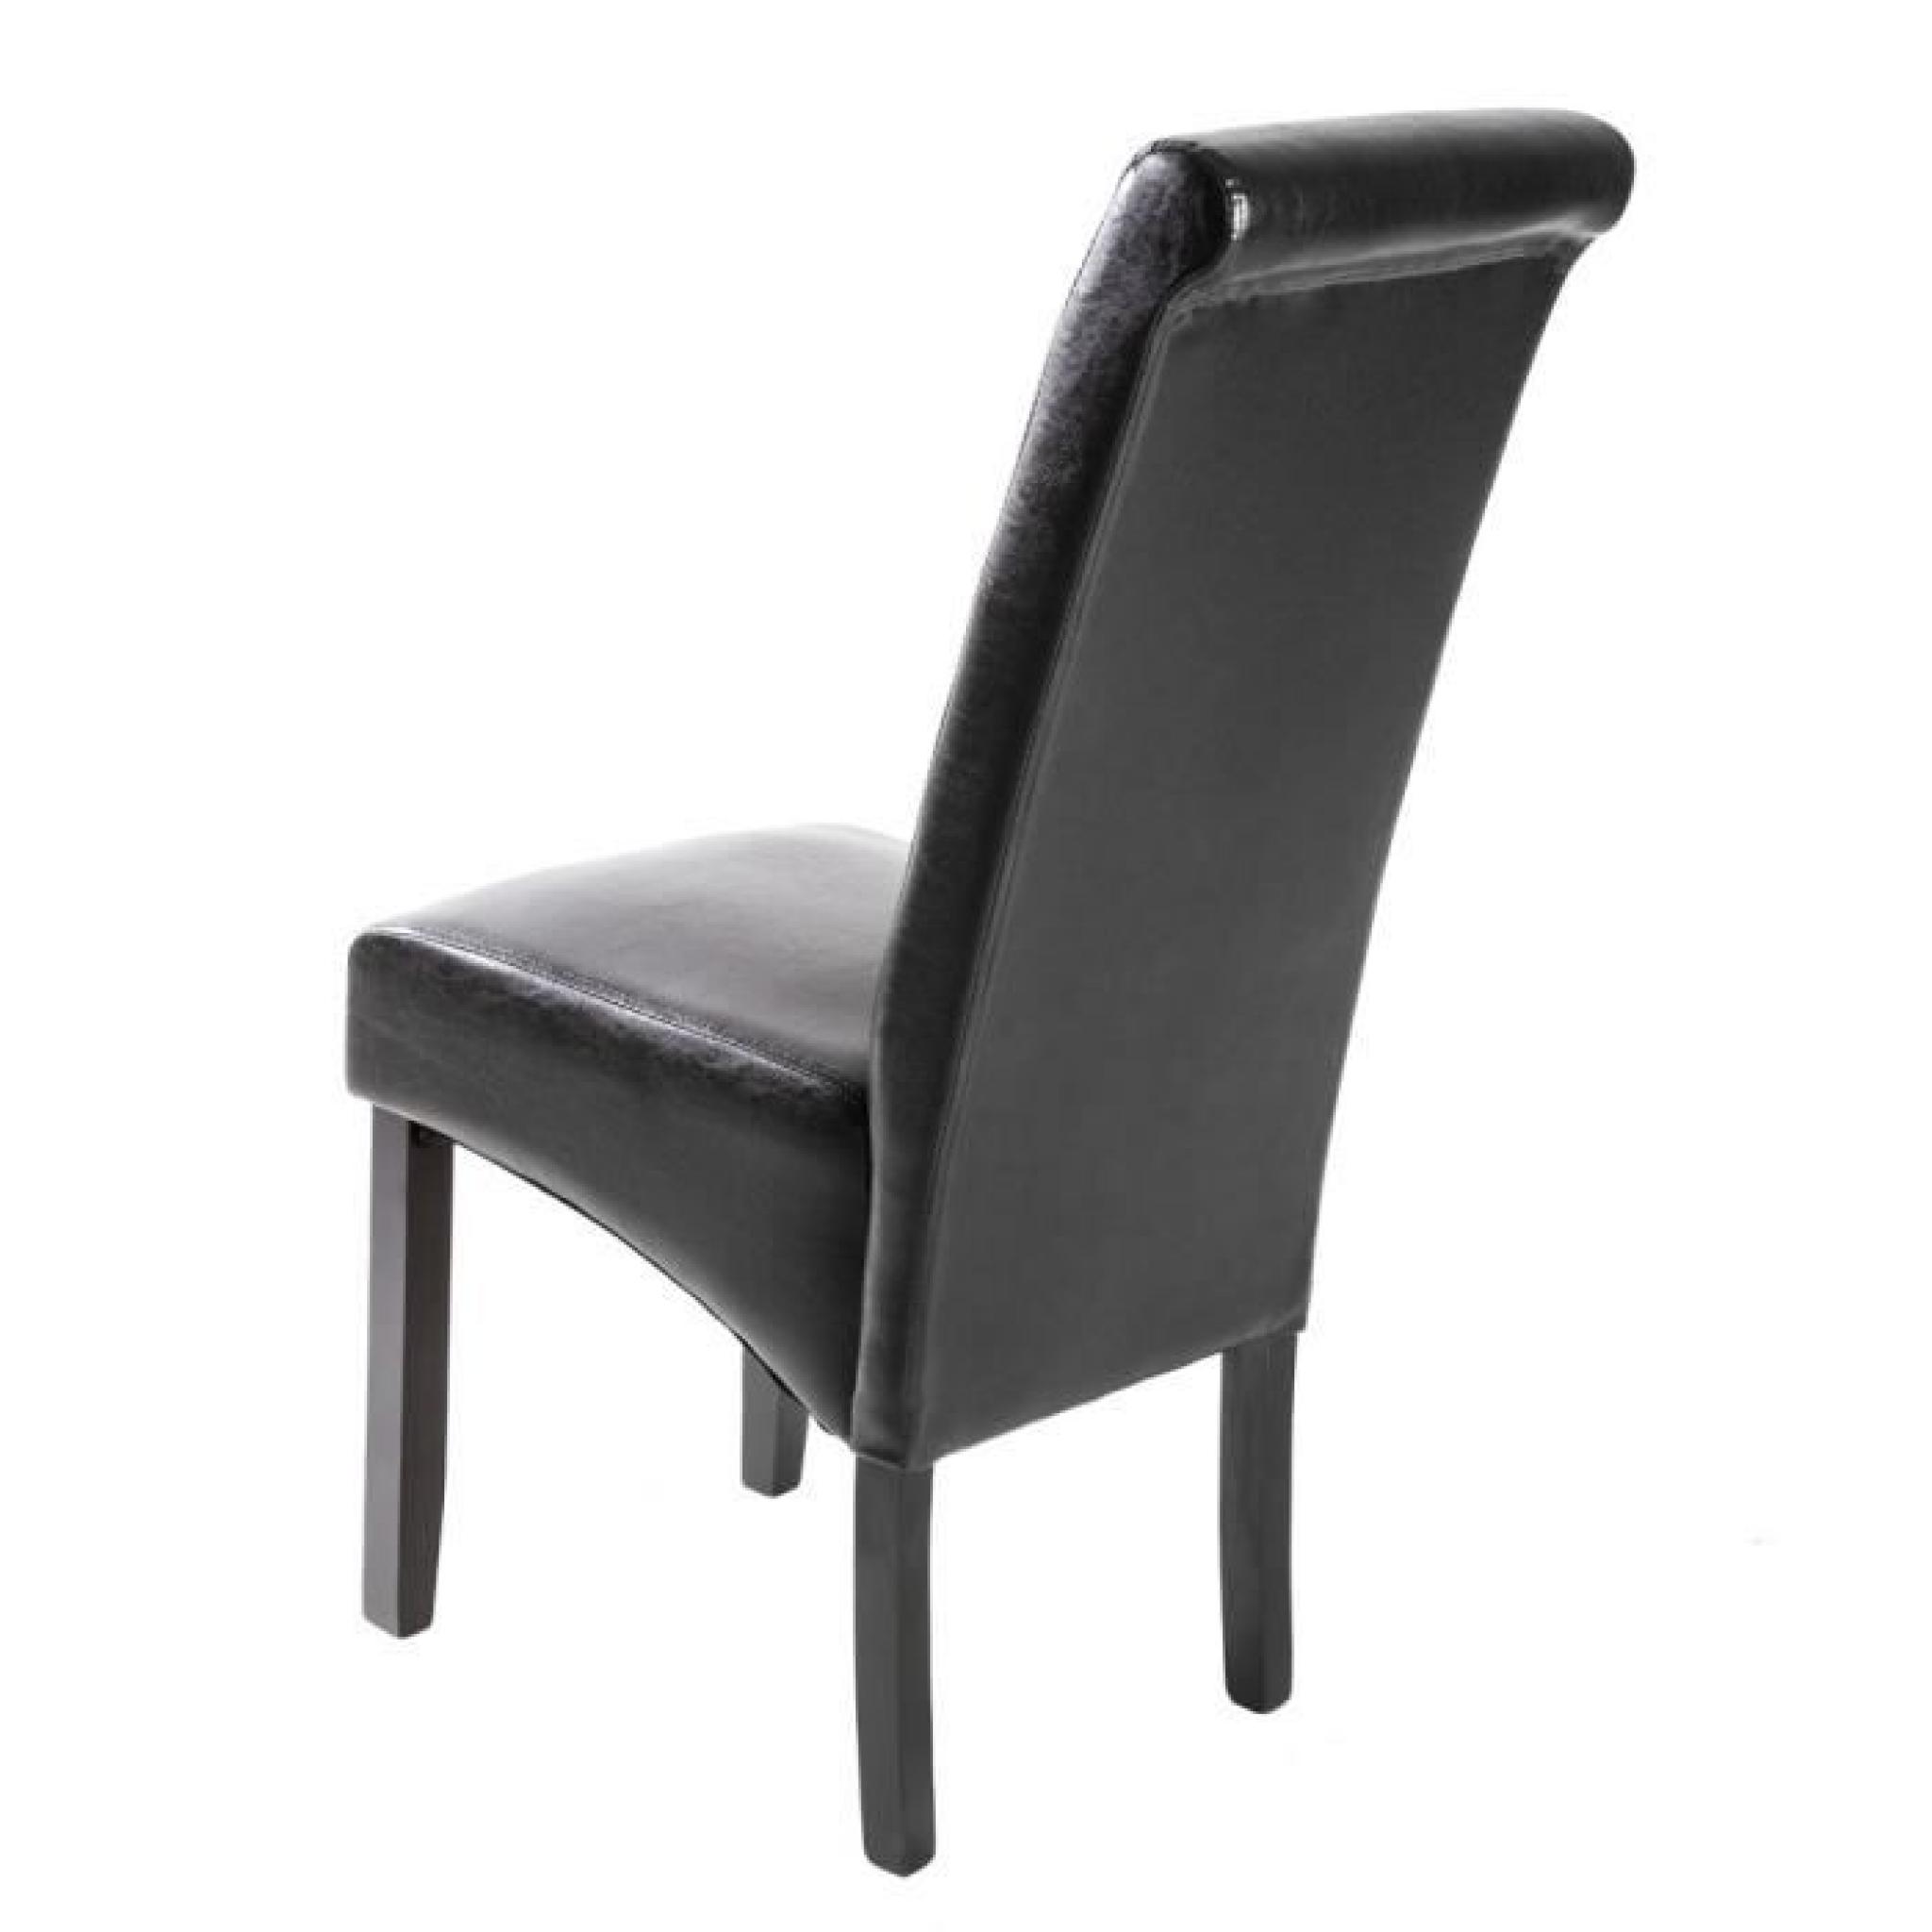 Chaise de salle à manger design 105 cm Noir, Chaise de Salon, Meuble de salon, Mobilier de Salon TECTAKE New pas cher